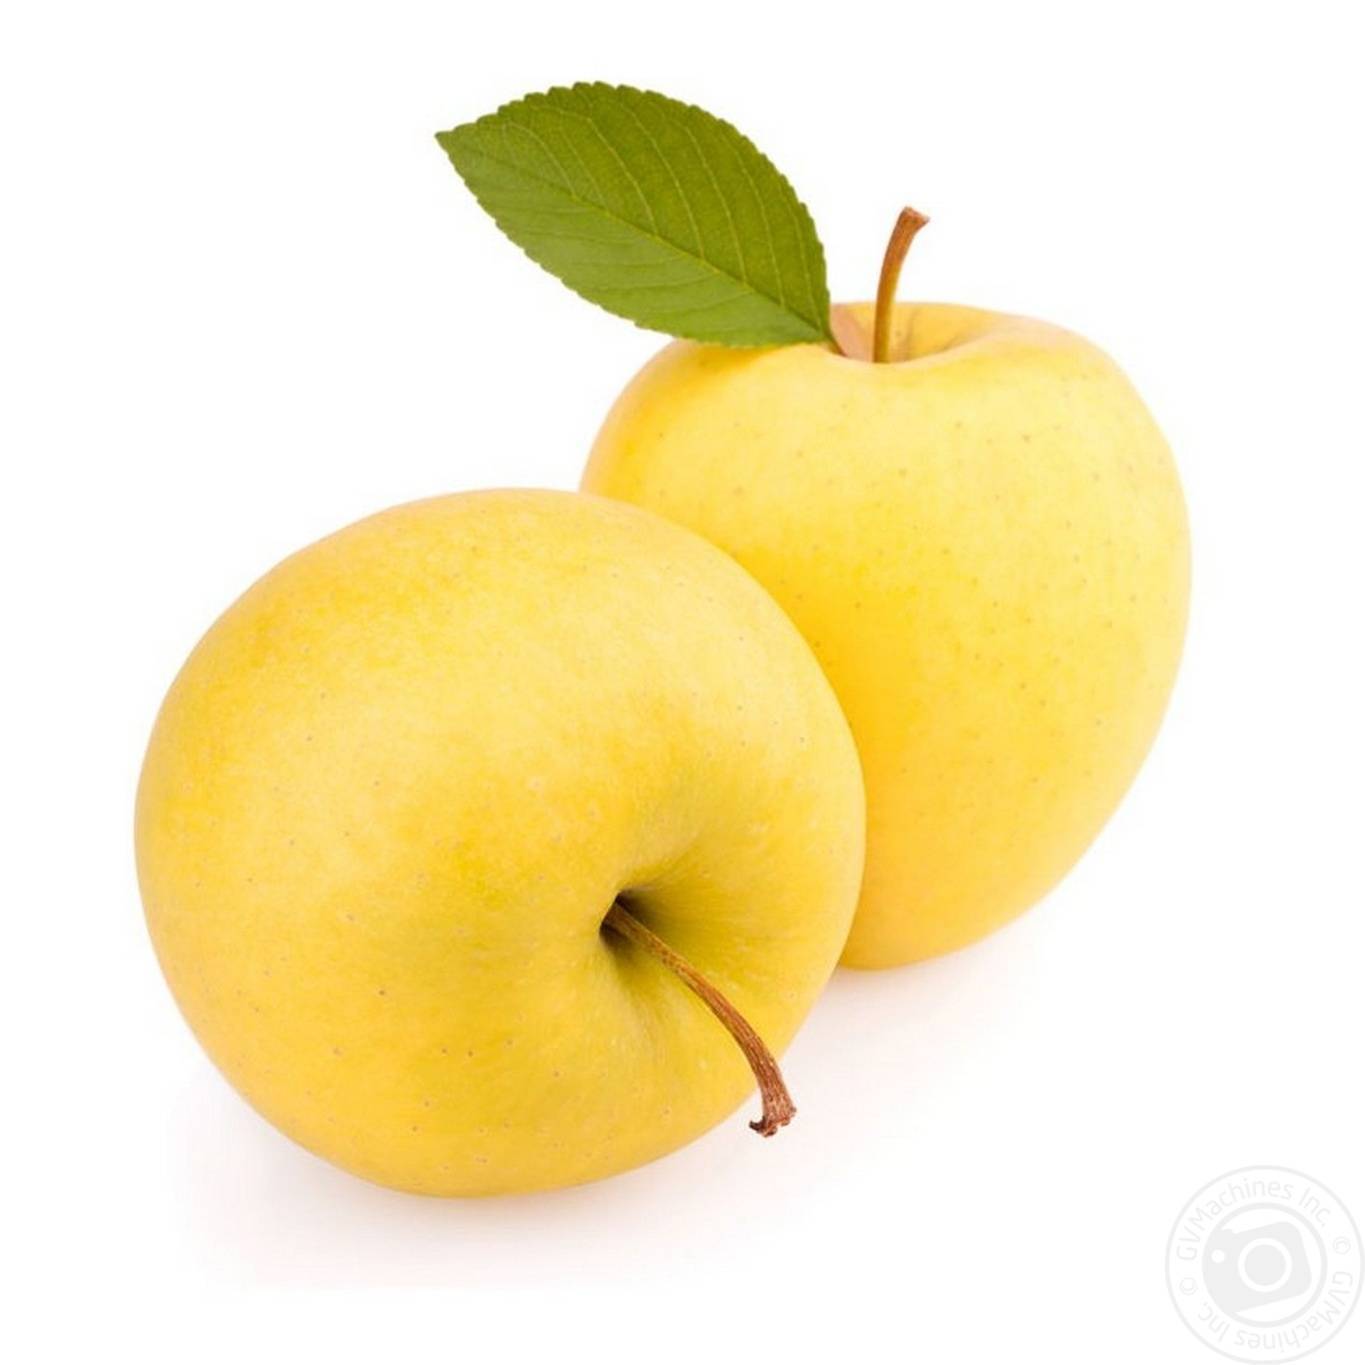 Настоящее золотое искушение — яблоки голден делишес